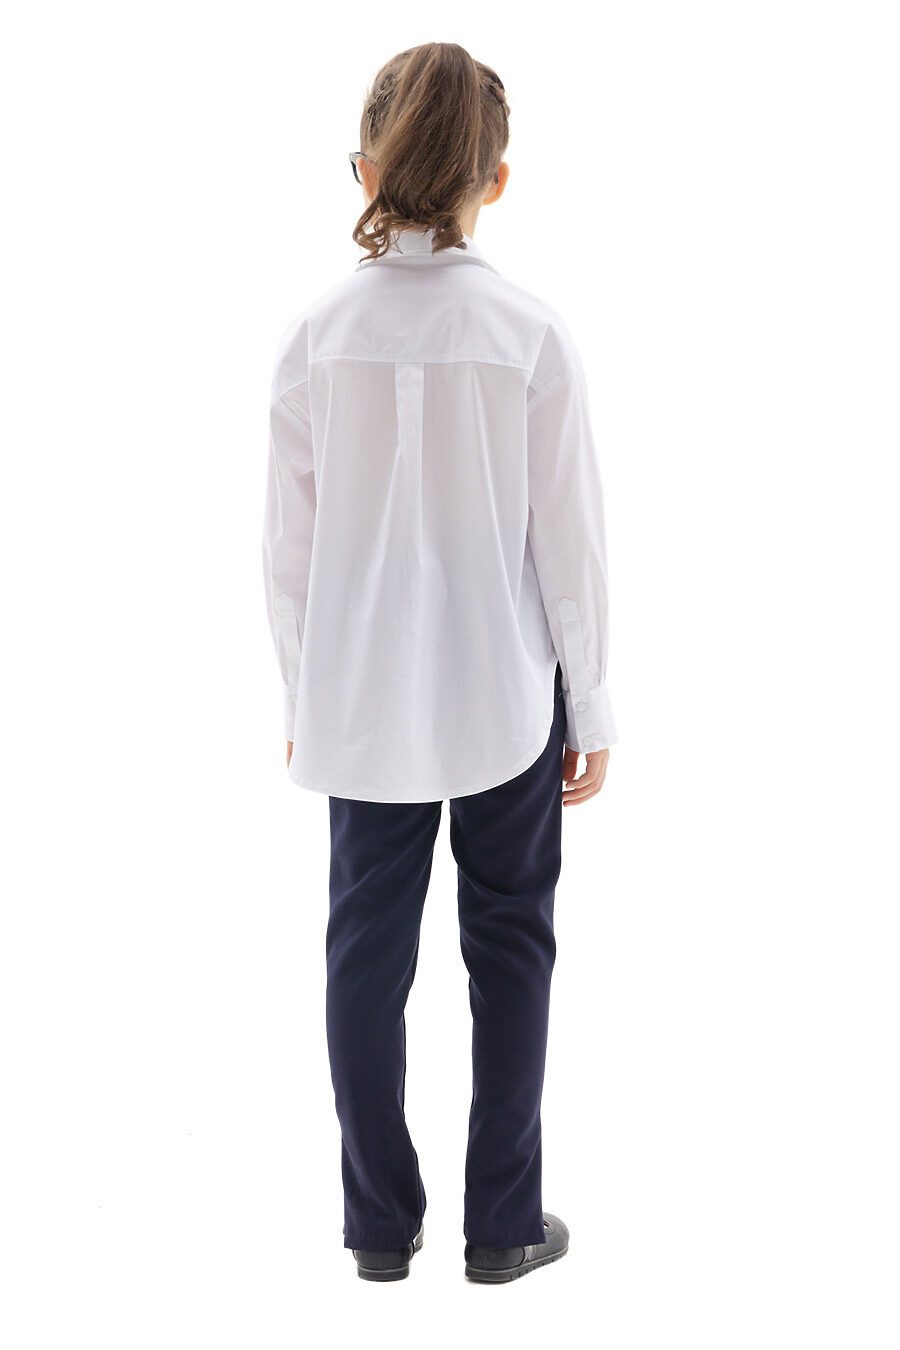 Блуза КАРАМЕЛЛИ (784937), купить в Moyo.moda